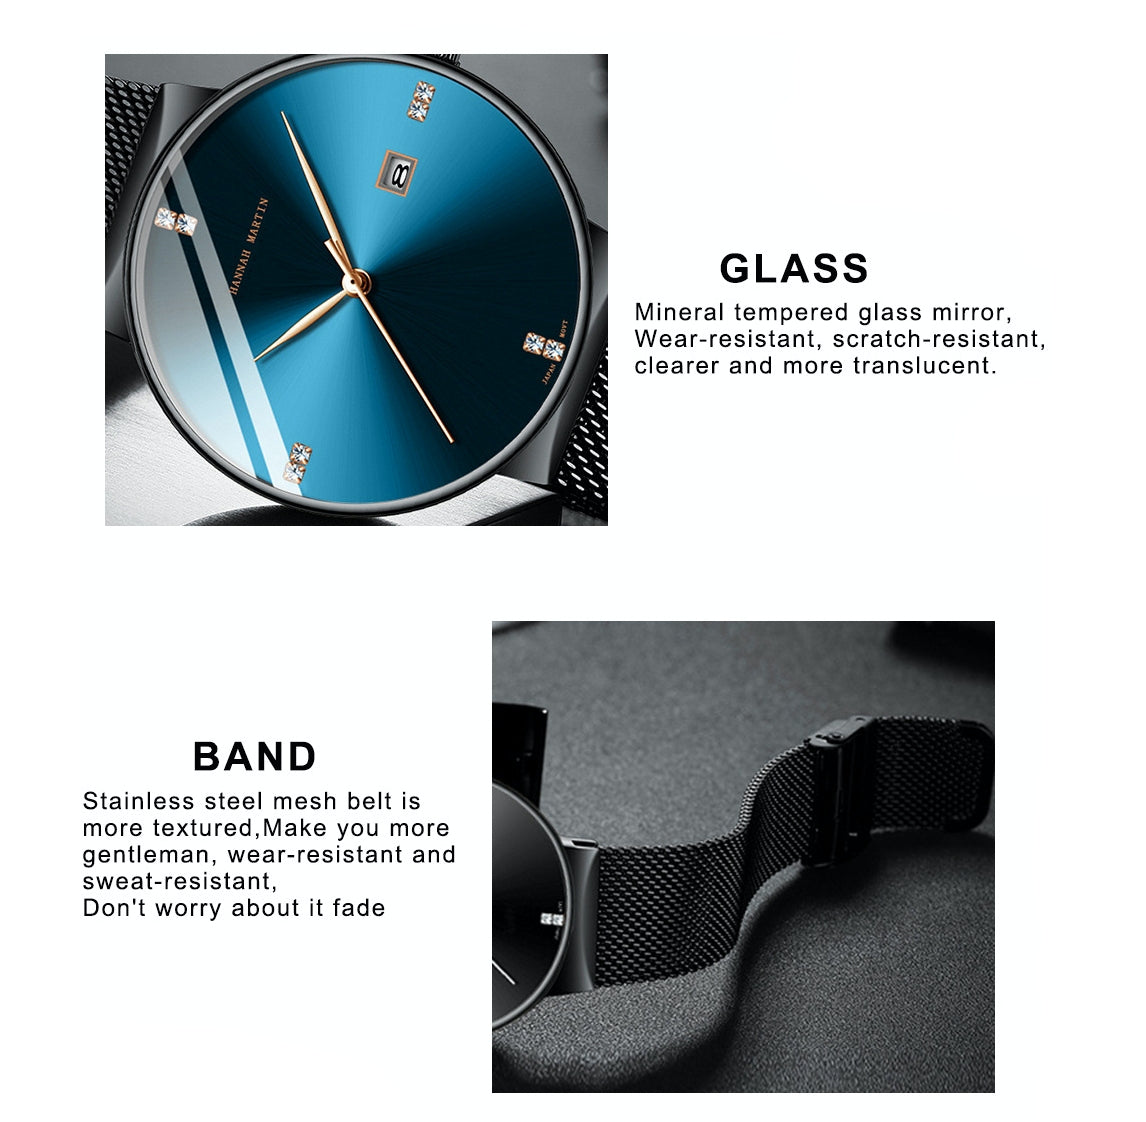 Mens Stylish Quartz Calendar Watch With Stainless Steel Watch Strap - BELLADONNA